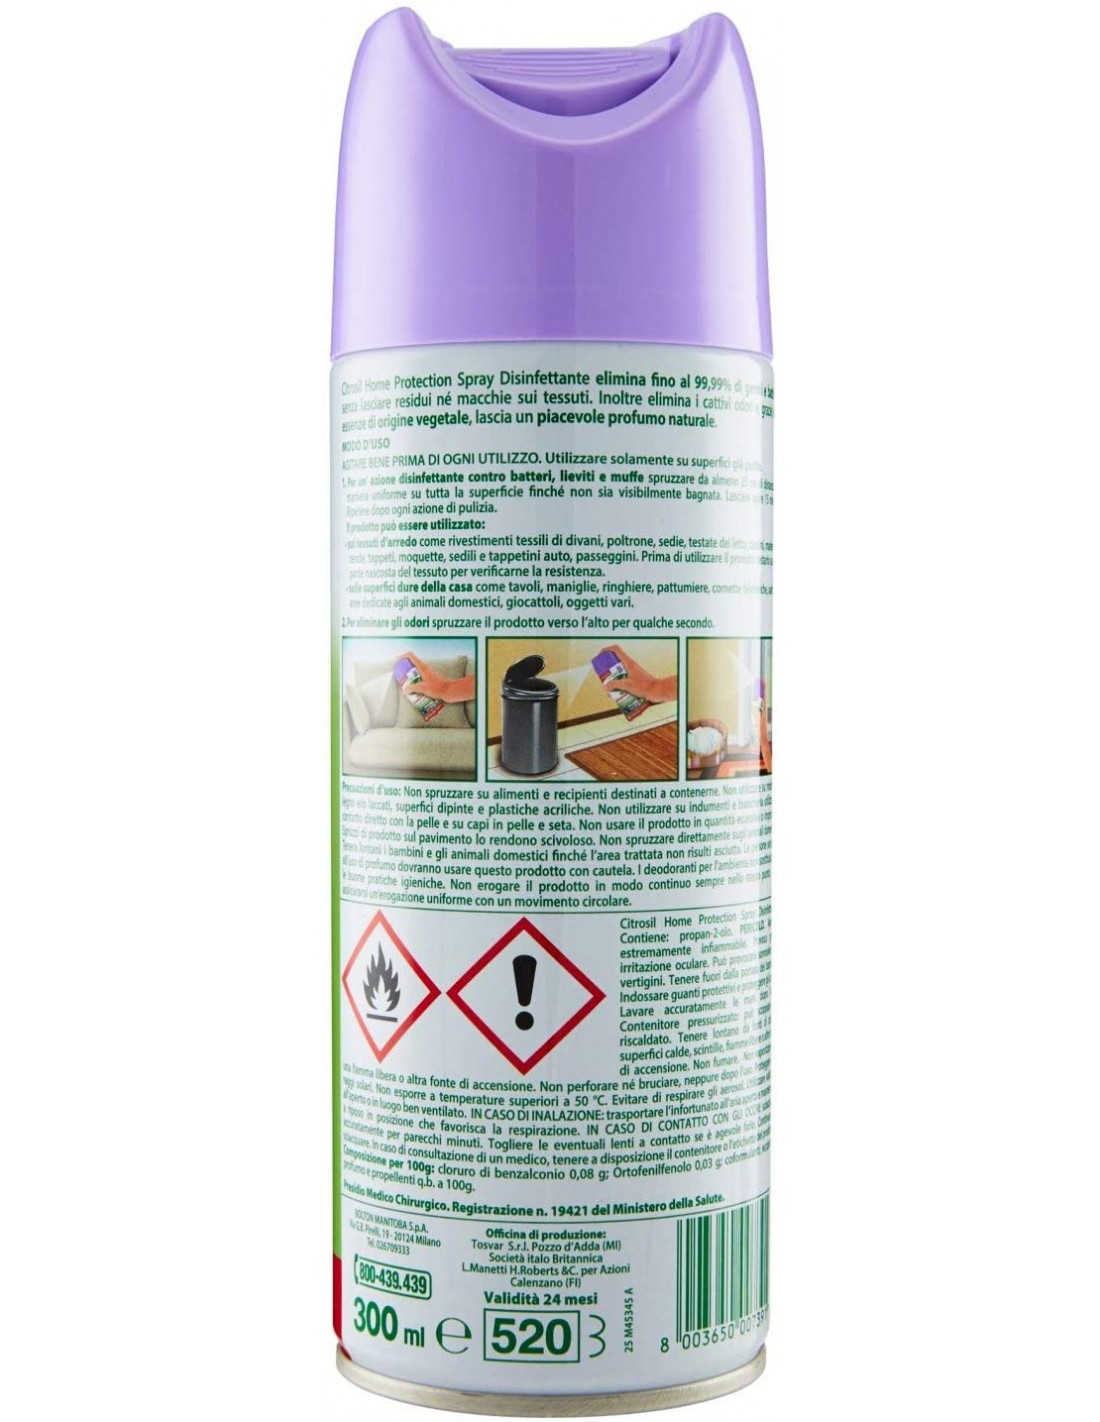 Citrosil Home Protection Spray Disinfettante con Essenze di Lavanda 300ml